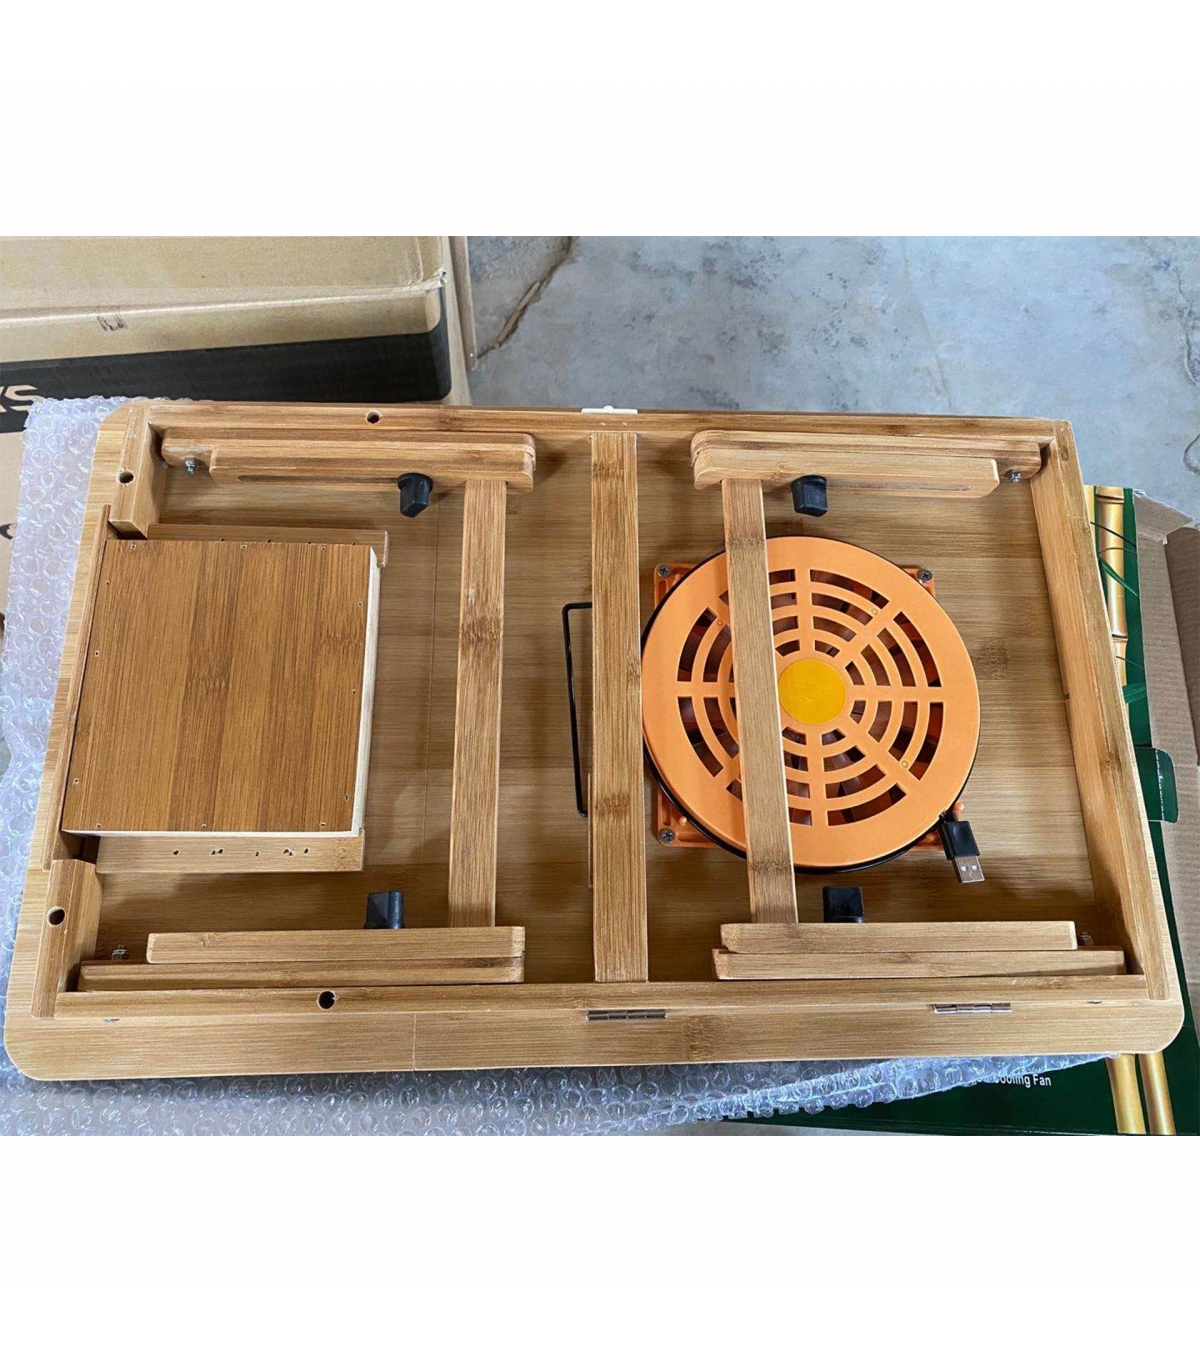 میز-چوبی-از-جنس-بامبو-لپ-تاپ-55-سانتی-متری-همراه-با-فن-مدل-b-94(1).jpg